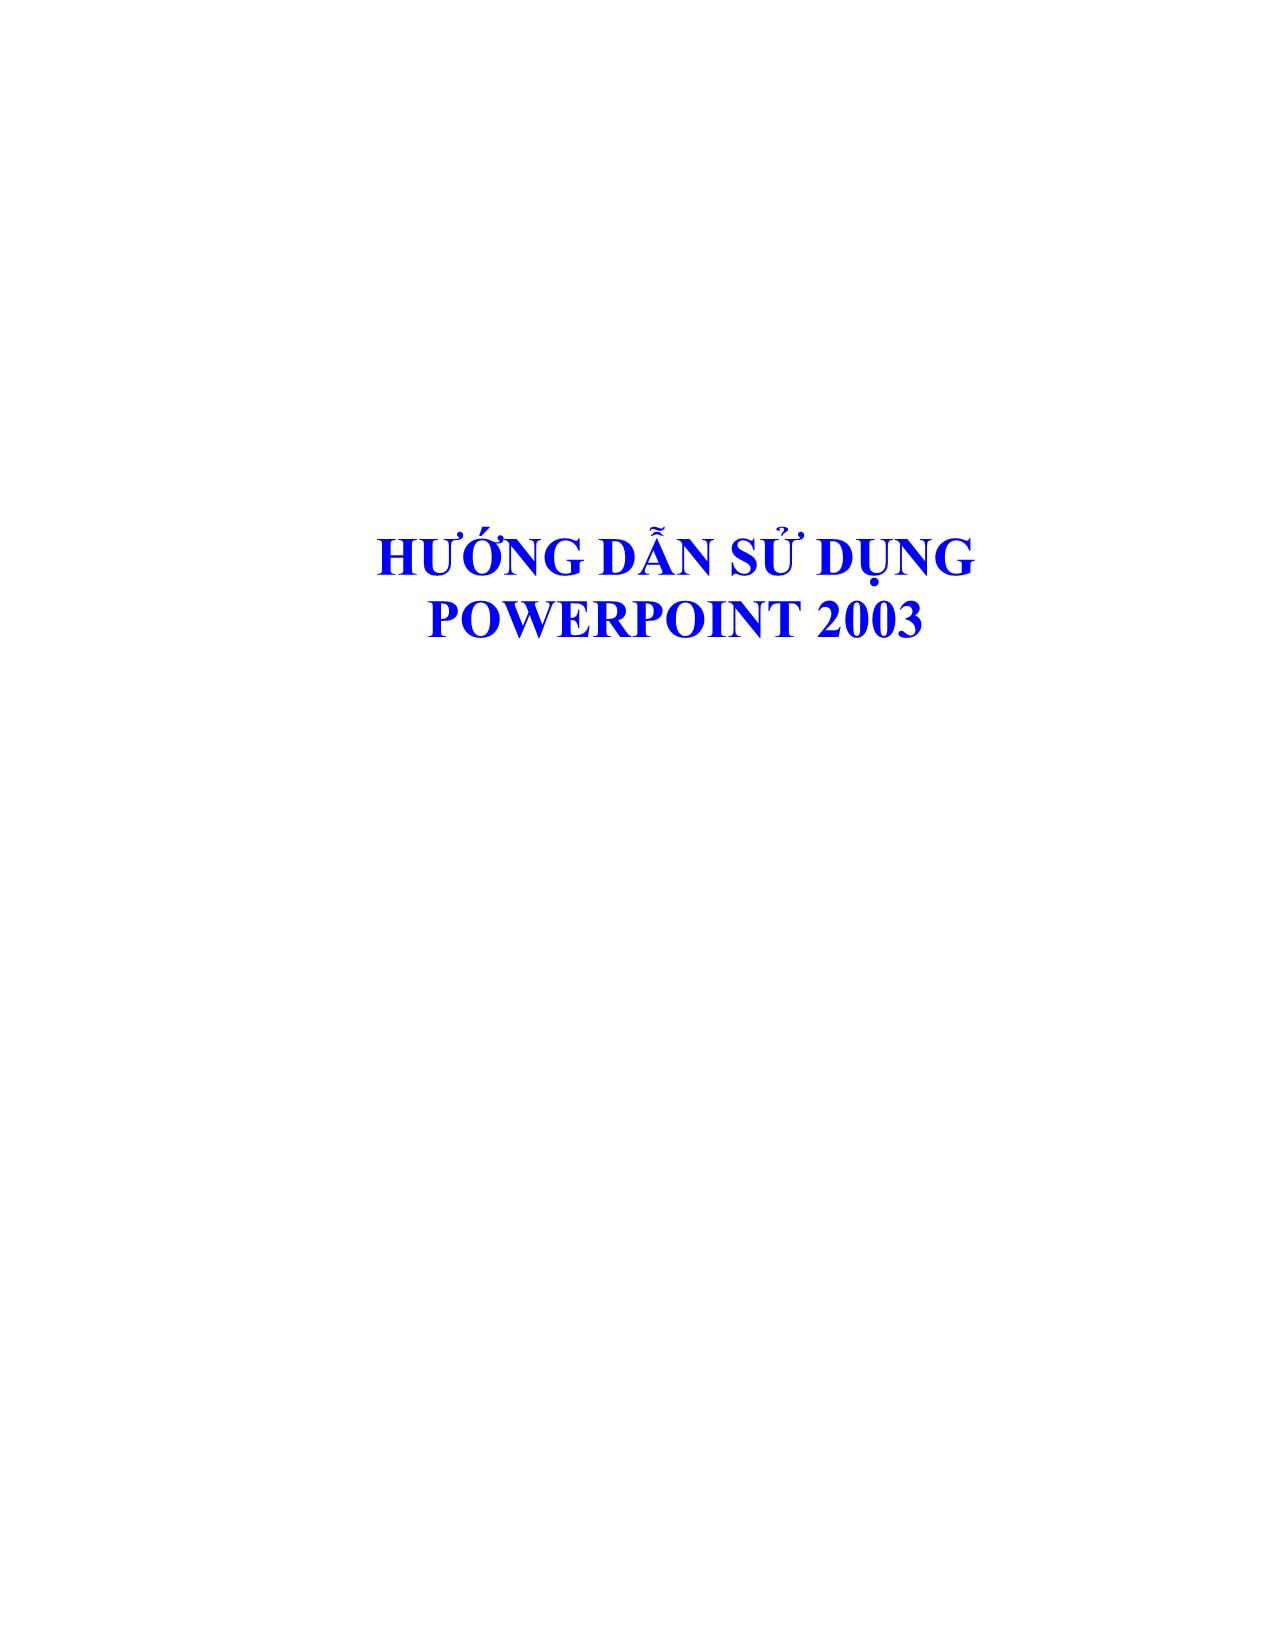 Hướng dẫn sử dụng powerpoint 2003 trang 1